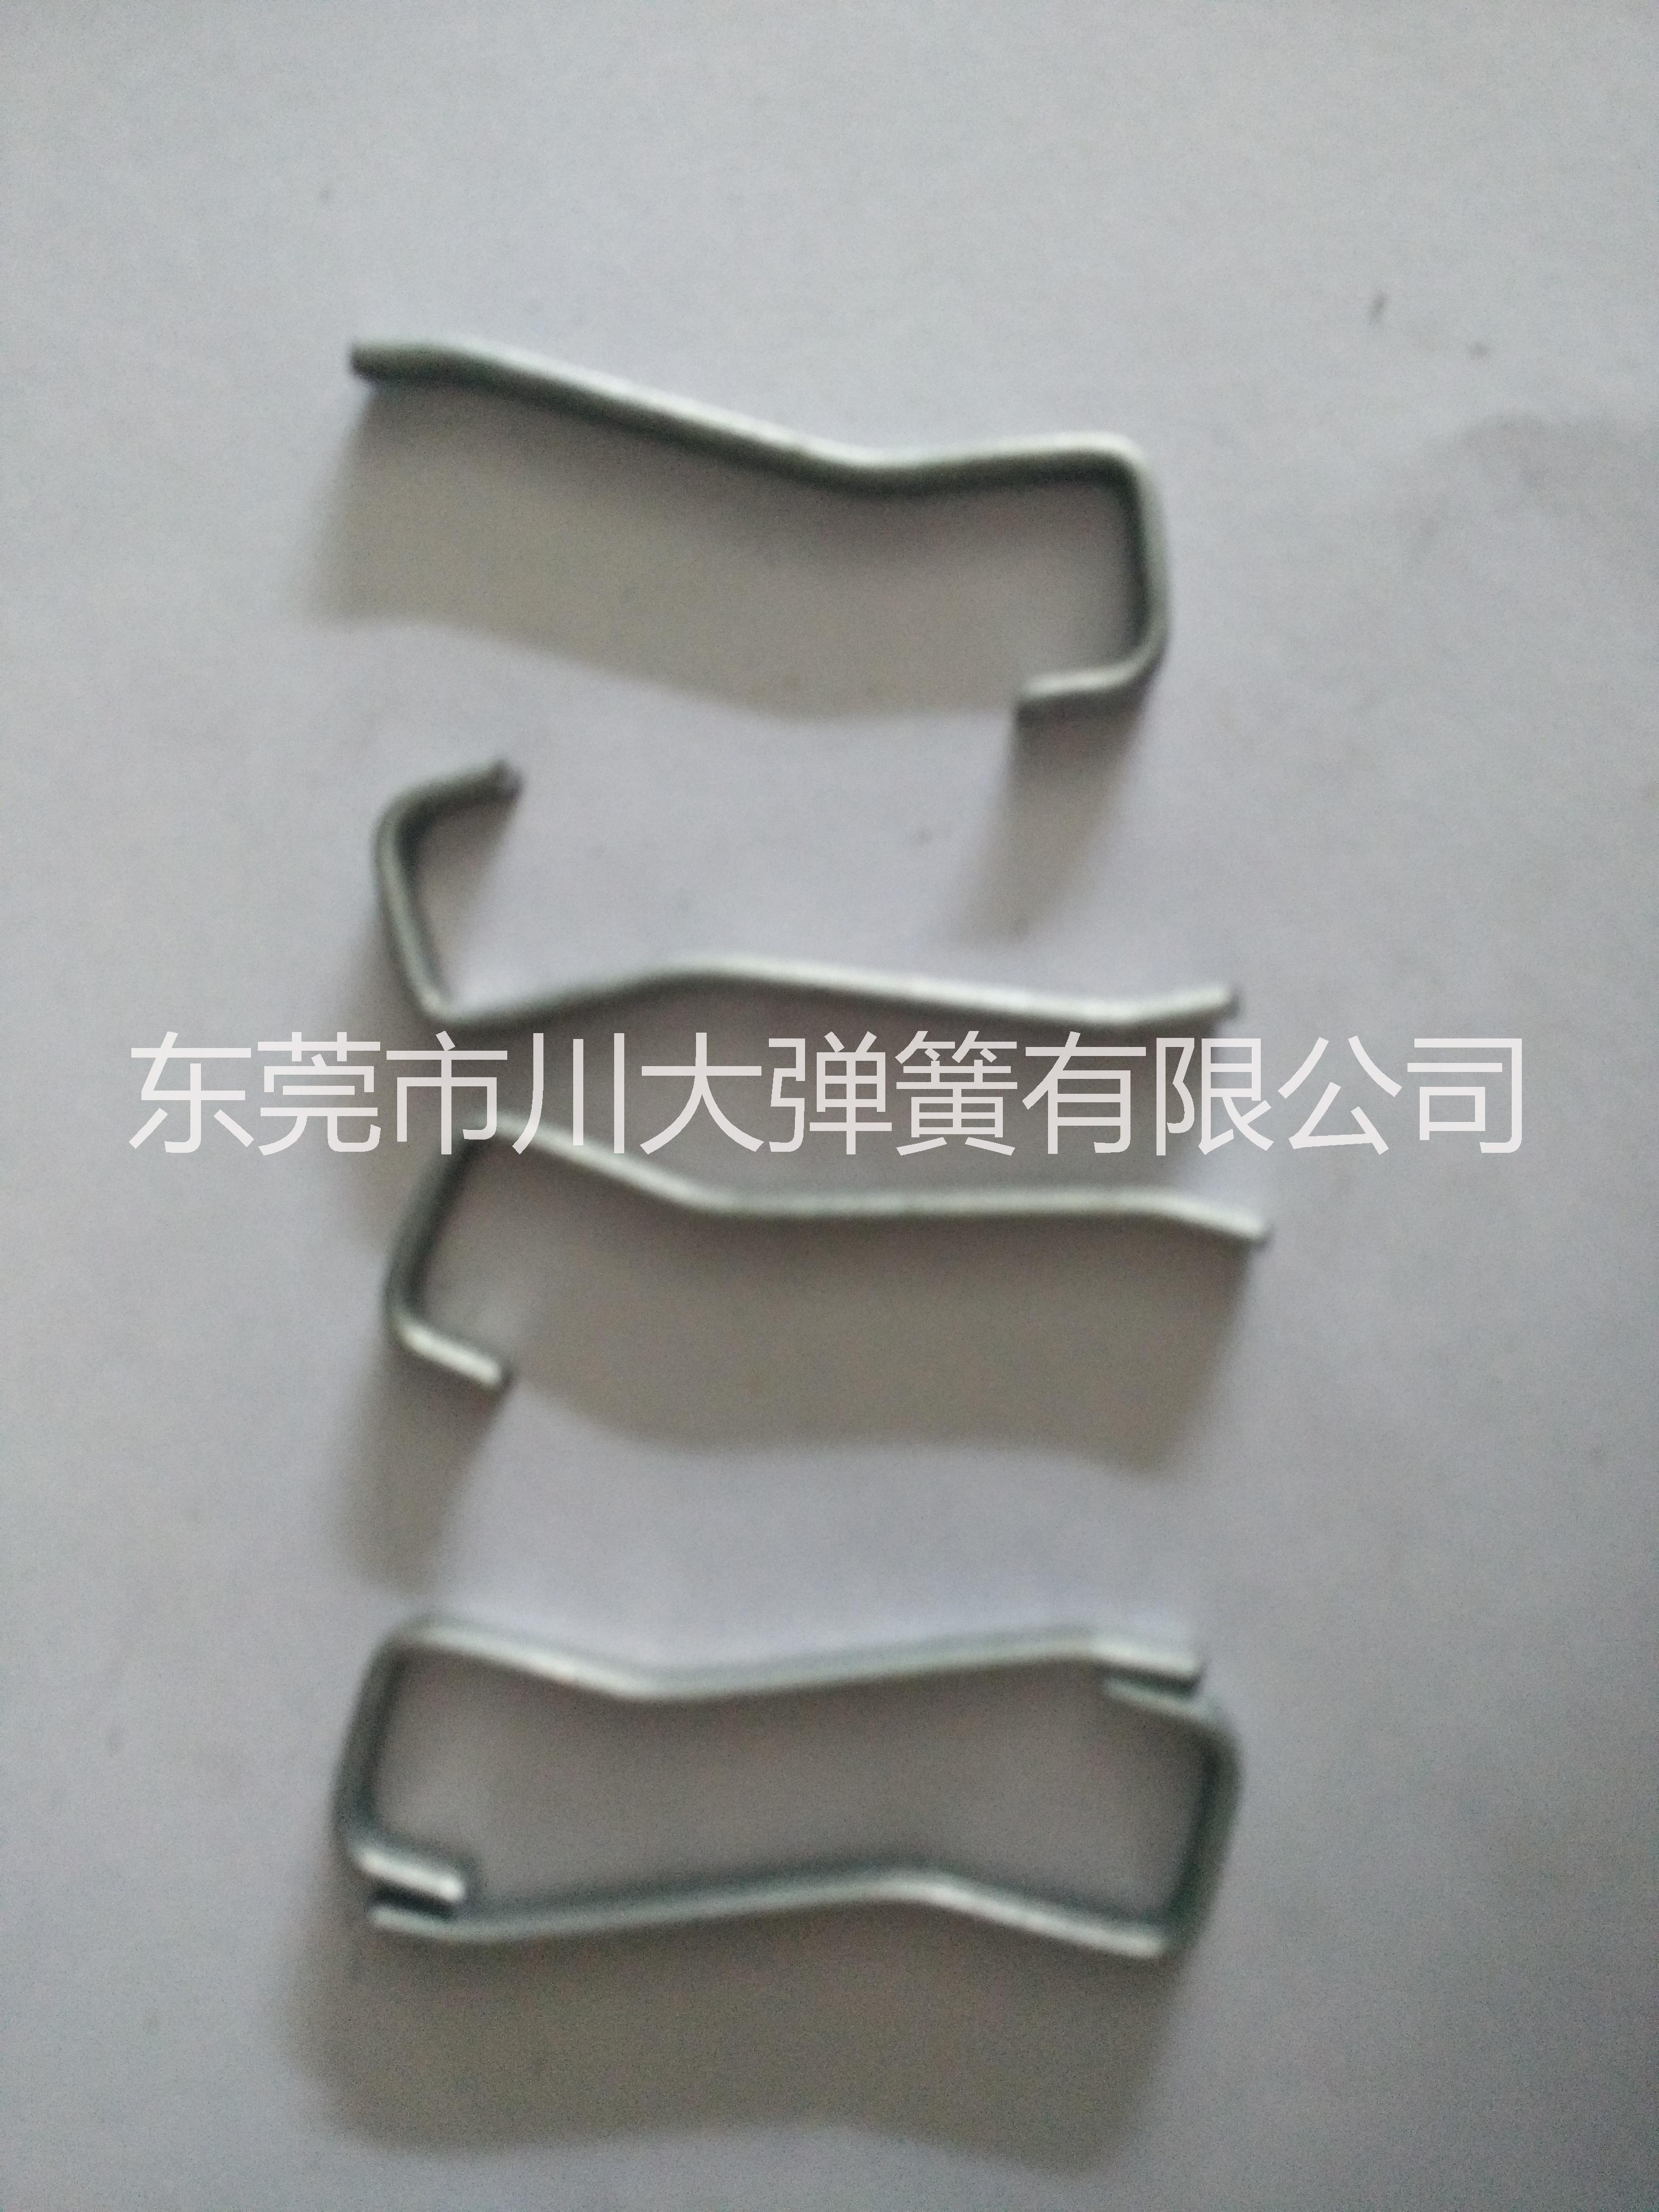 长期生产 镀锌铁线成形 包铁线批发